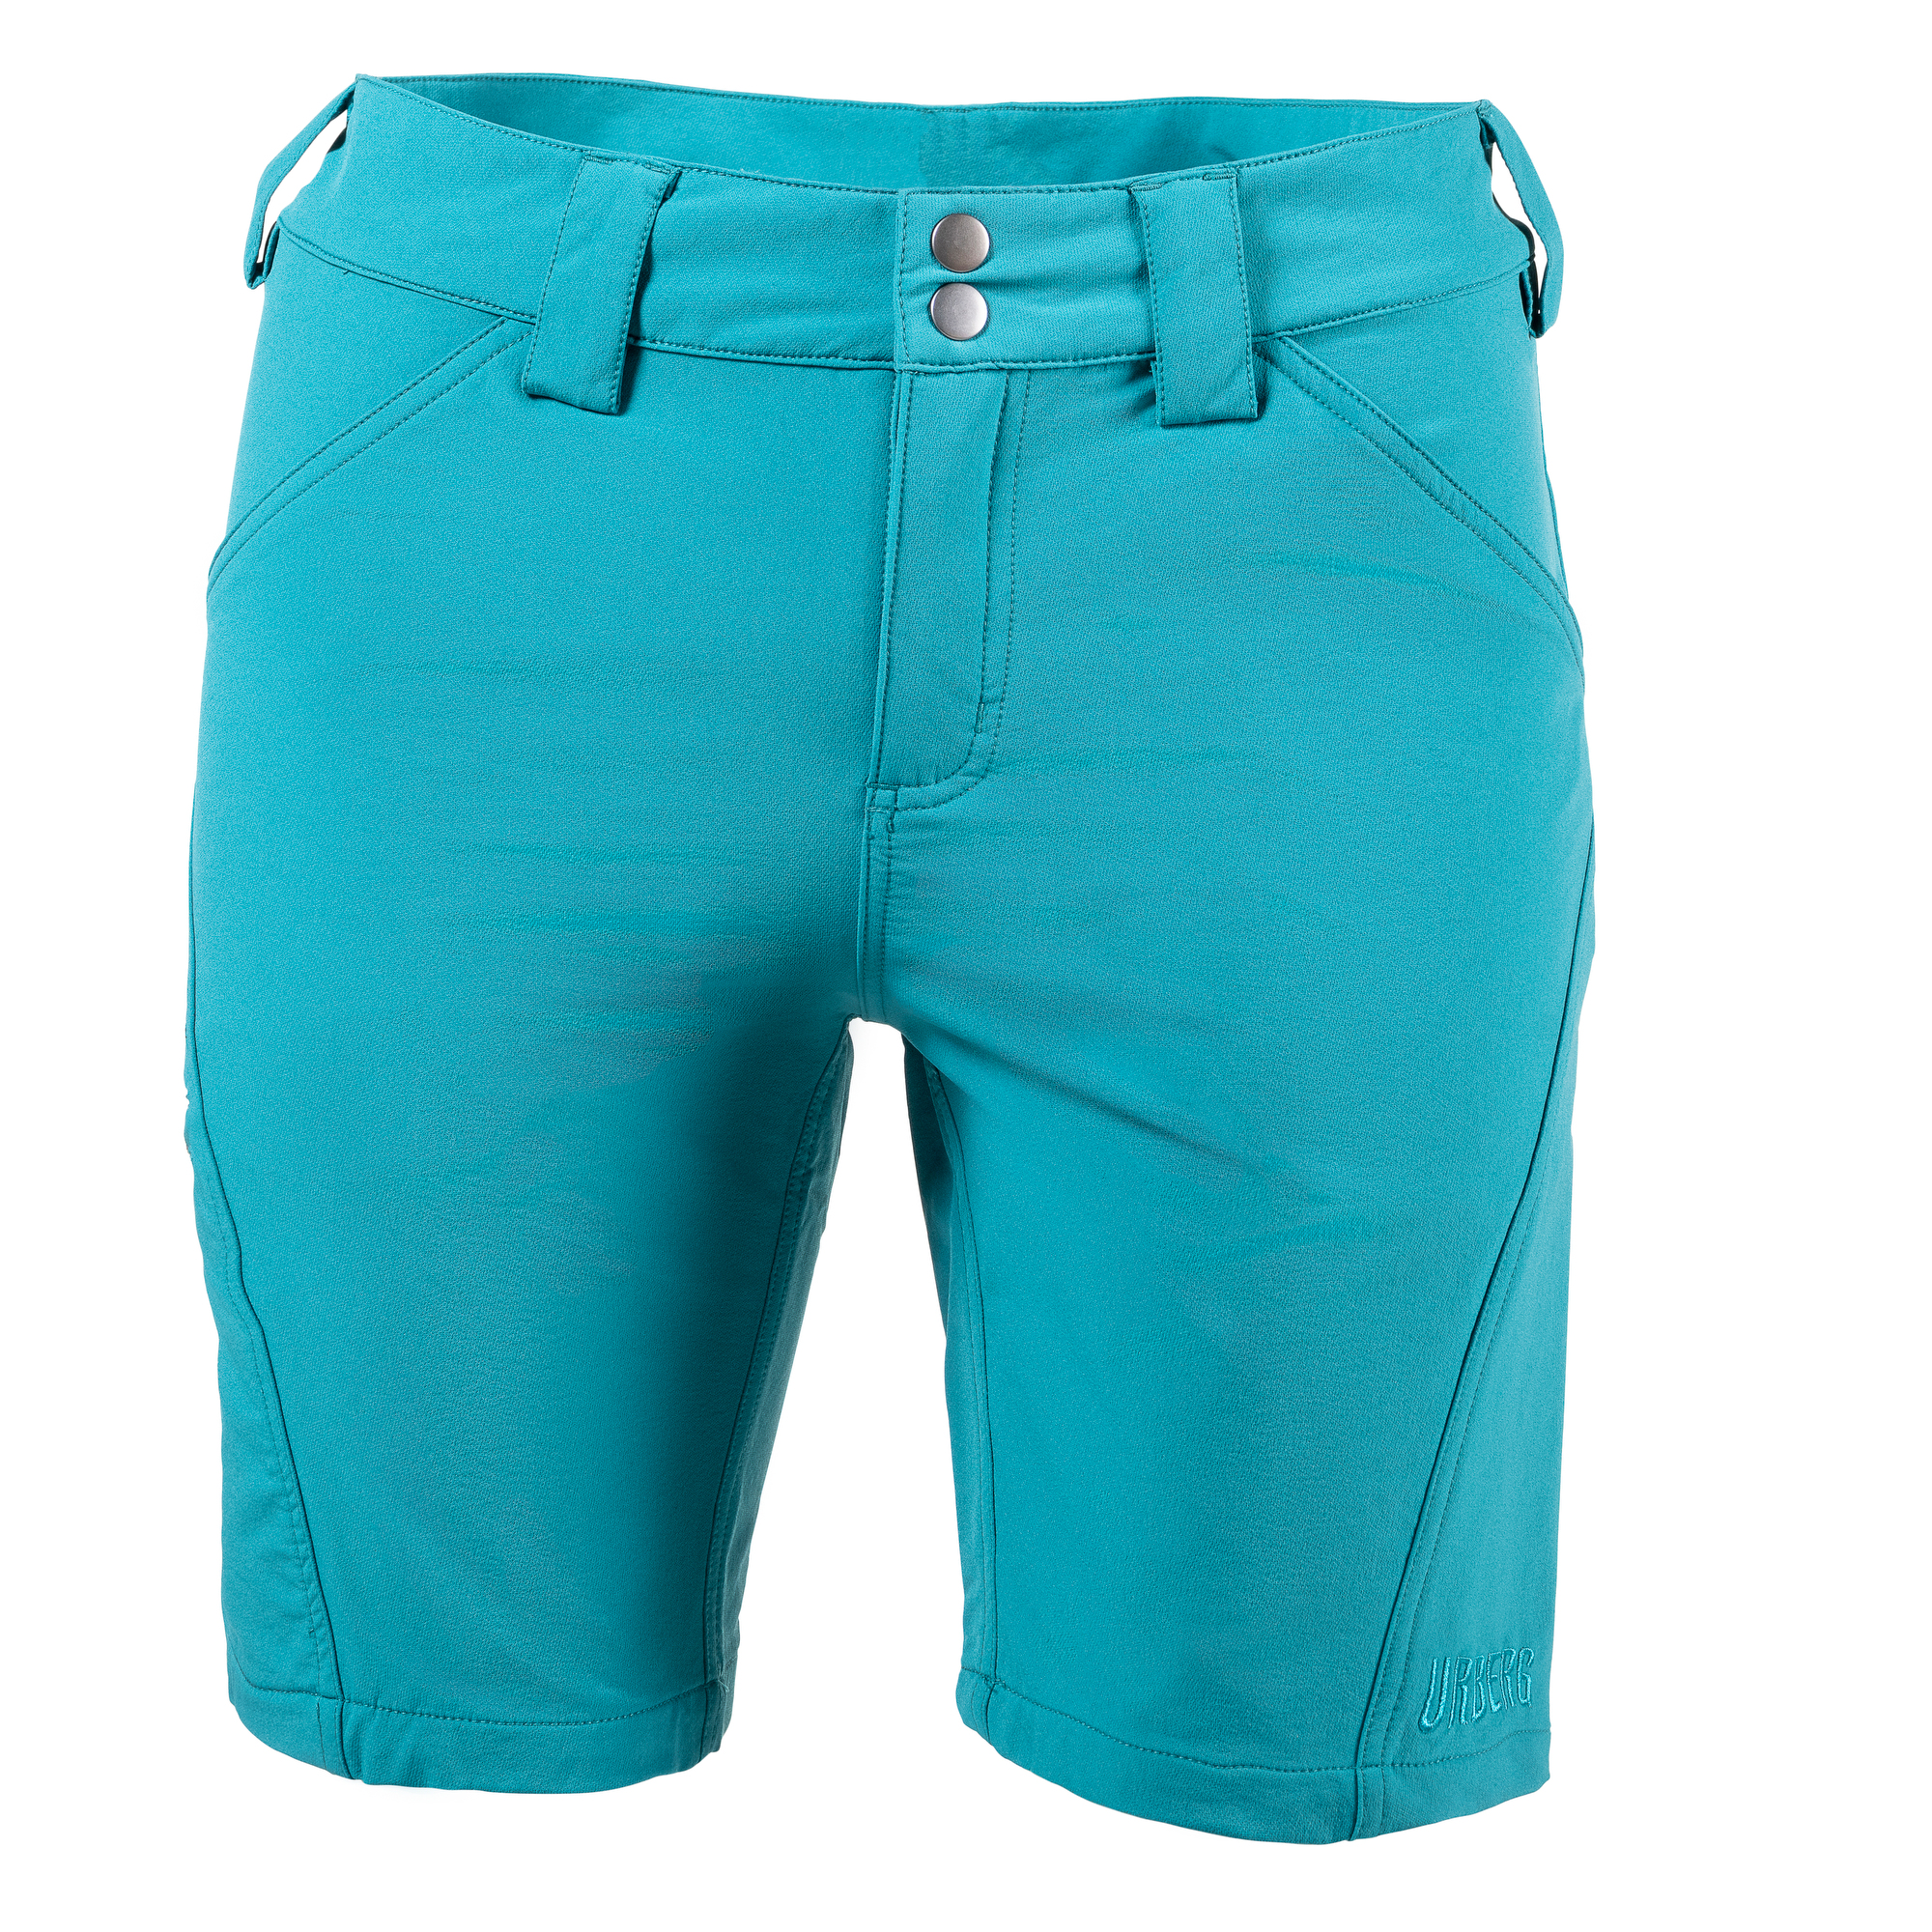 Tomrefjord Hiking Shorts Men Harbor Blue